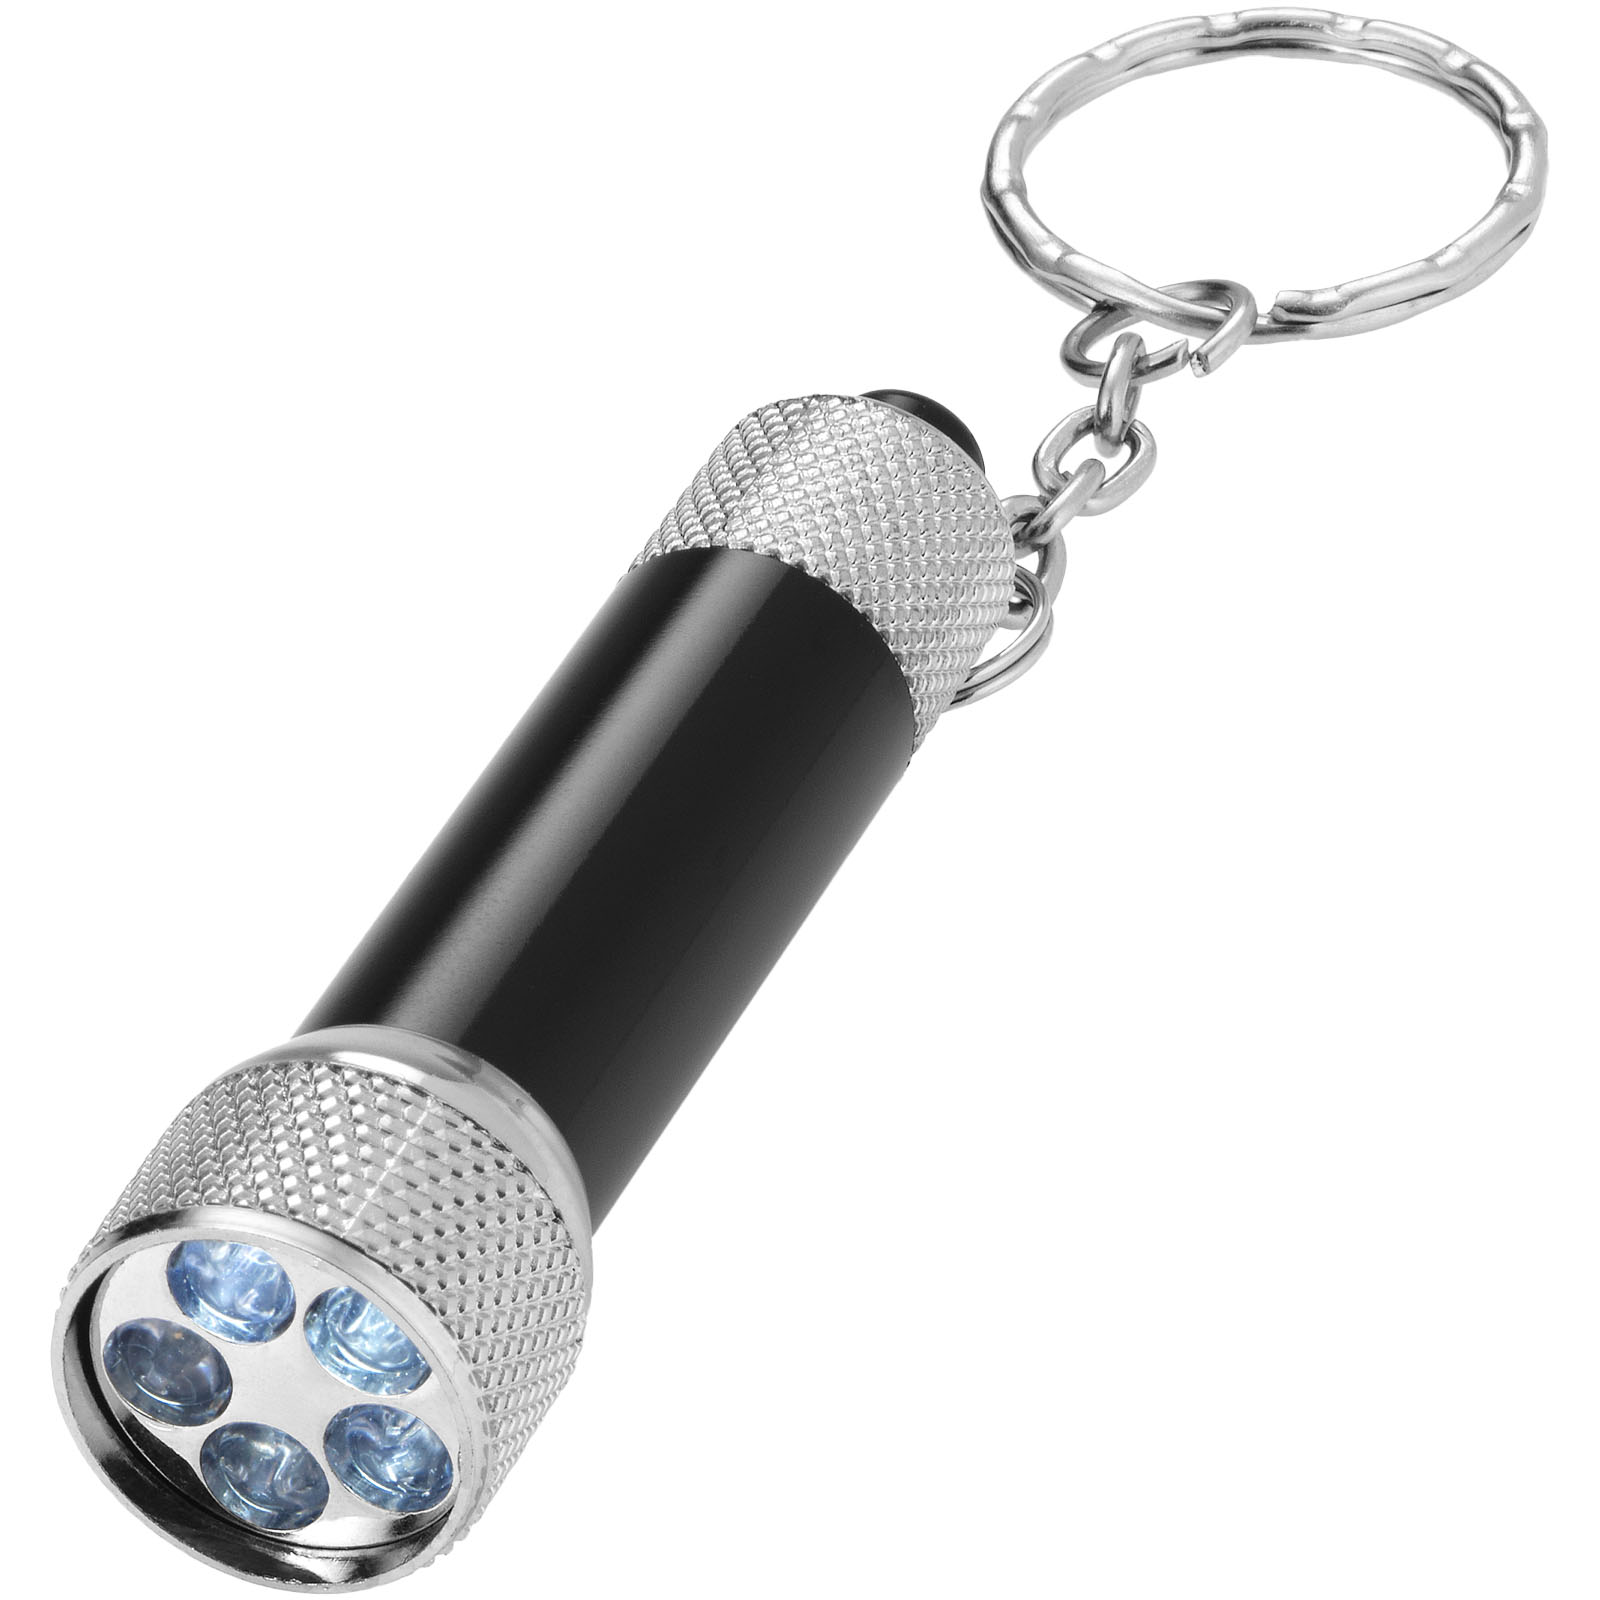 Outils et accessoires pour la voiture - Porte-clés avec lampe LED Draco